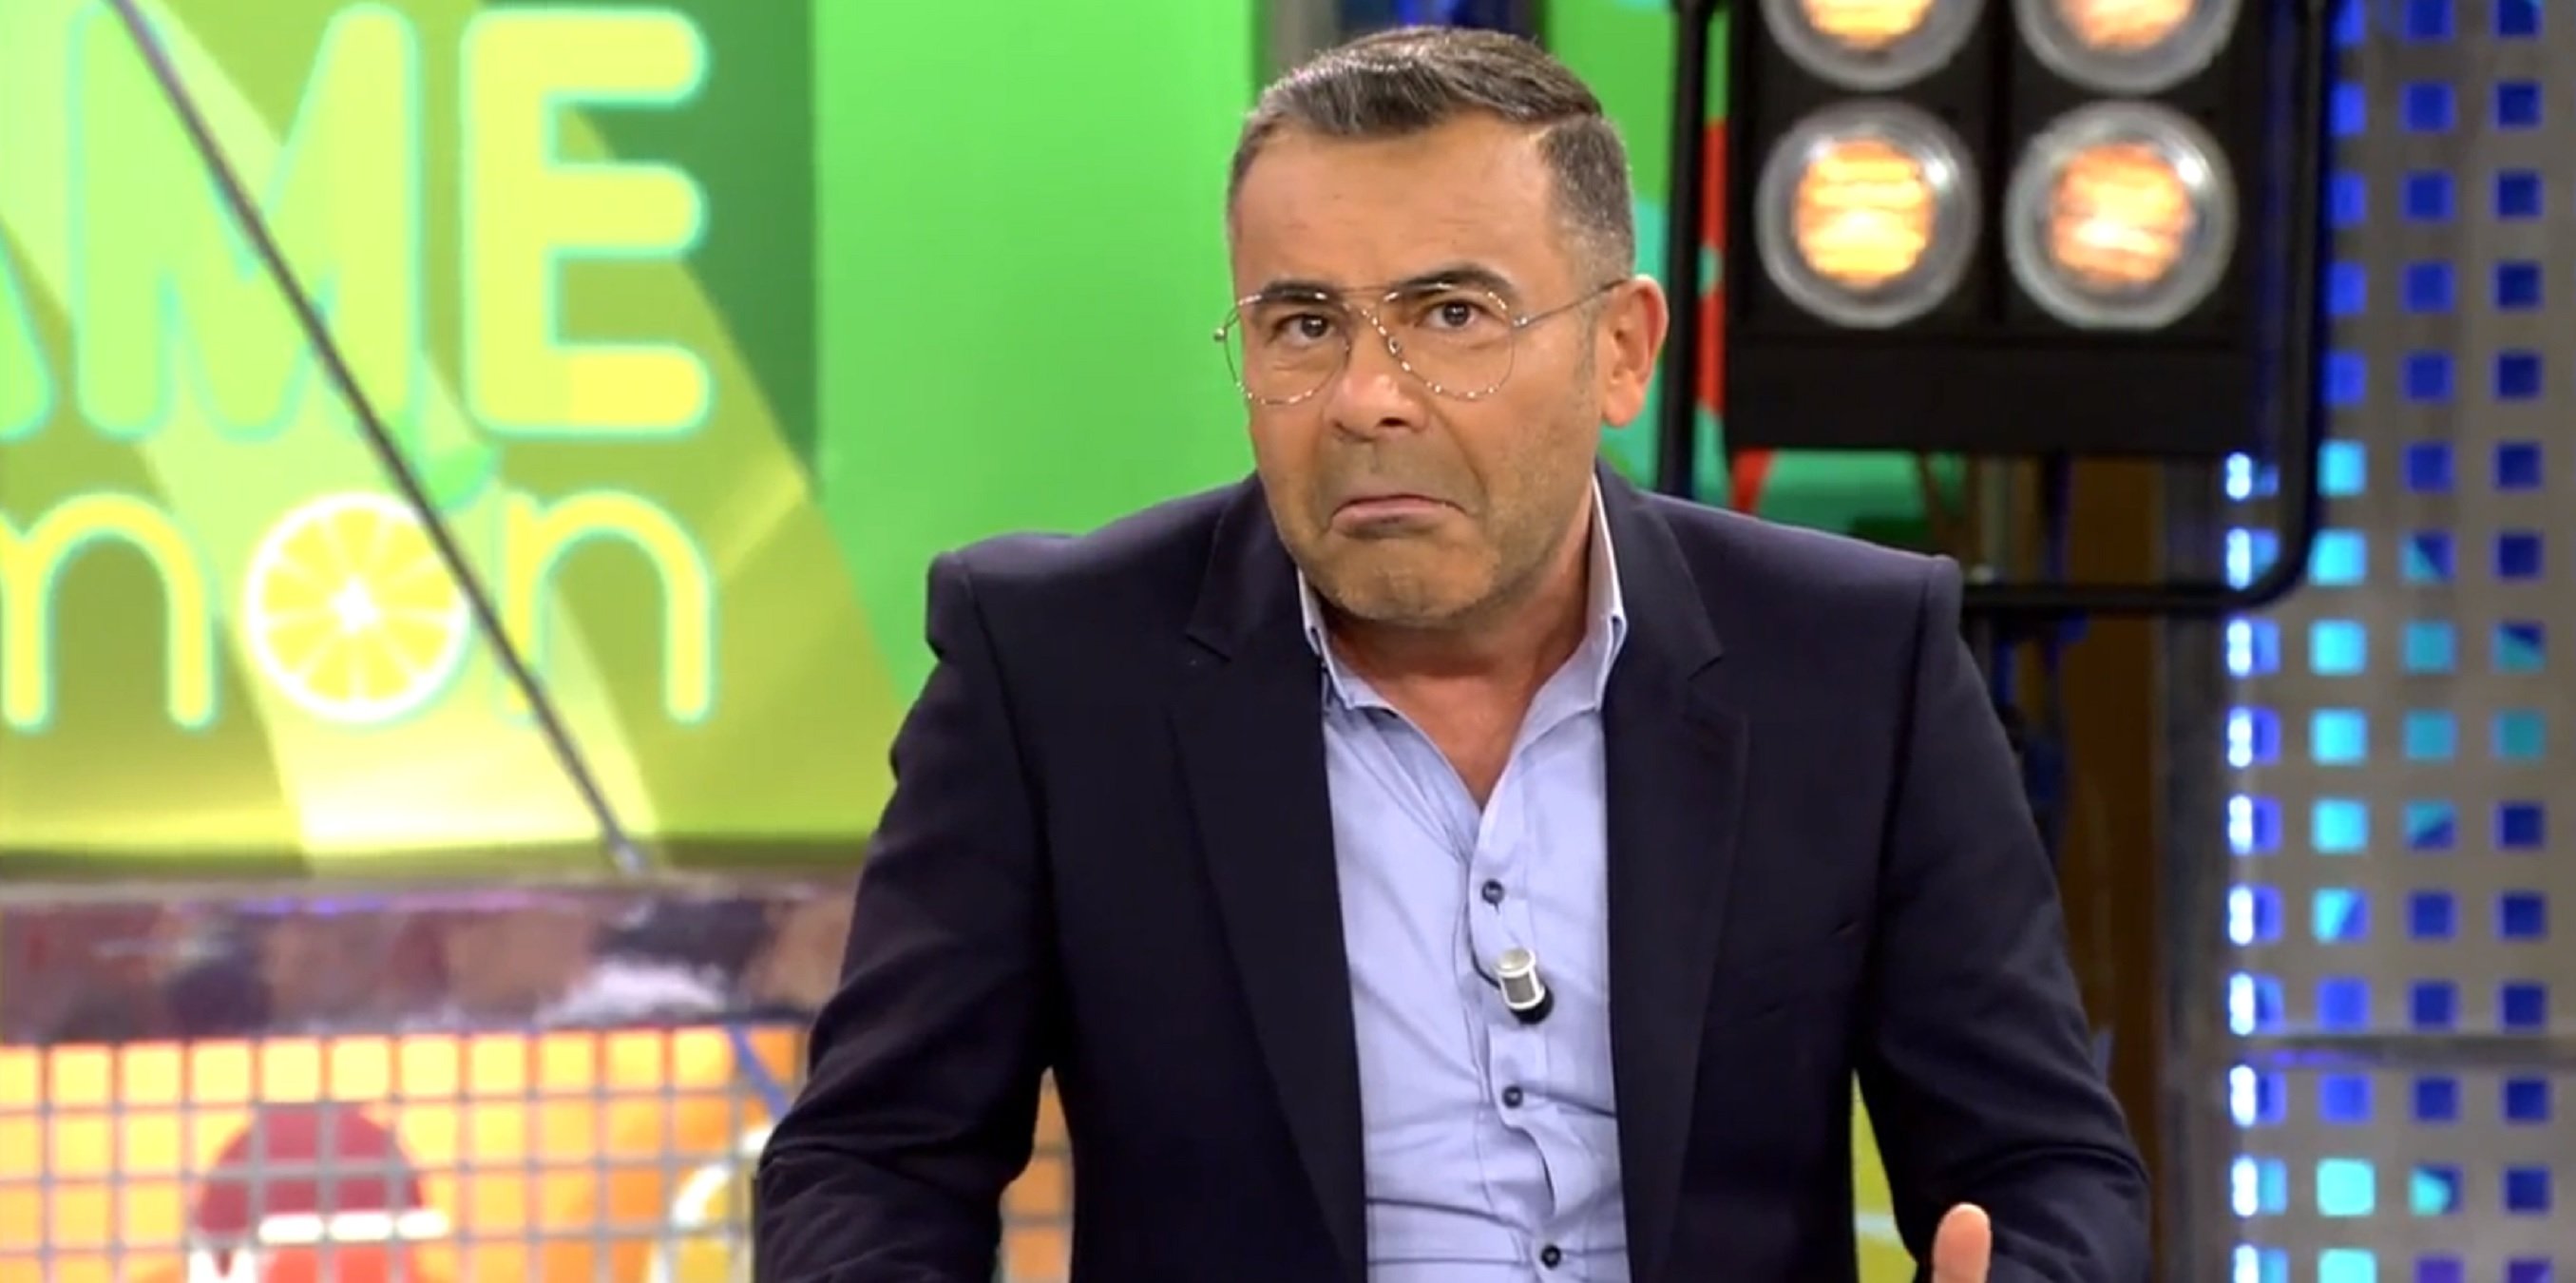 Un actor de TV3 diu "bazofia" a Jorge Javier. "Y tú haces bodrios y mierda"